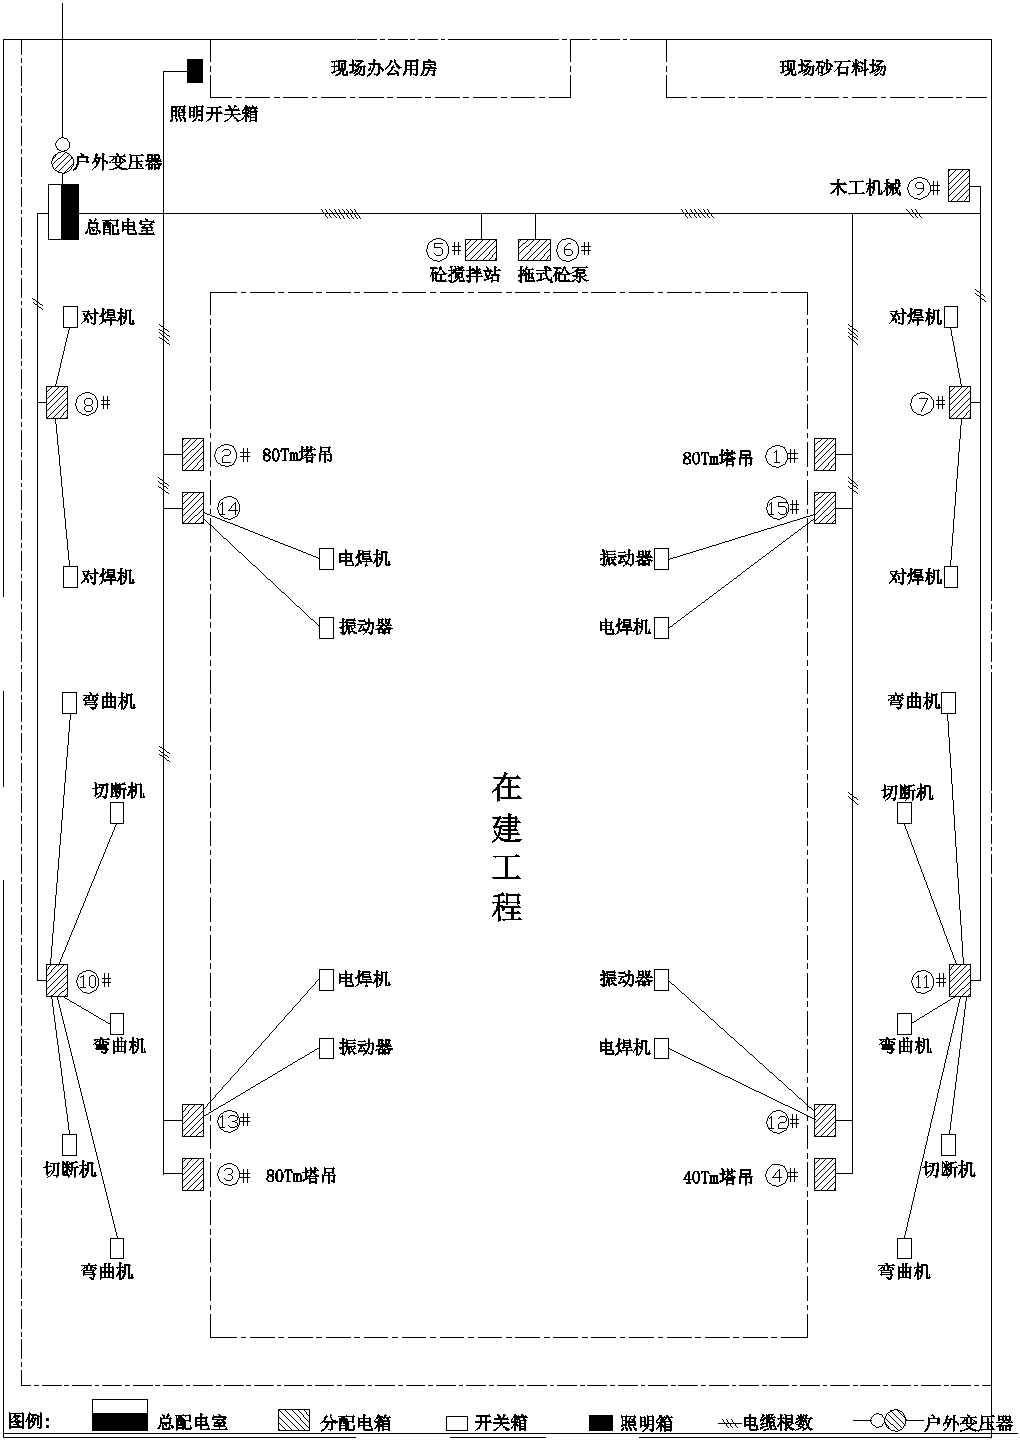 江苏某厂房工程临时用电平面及系统图